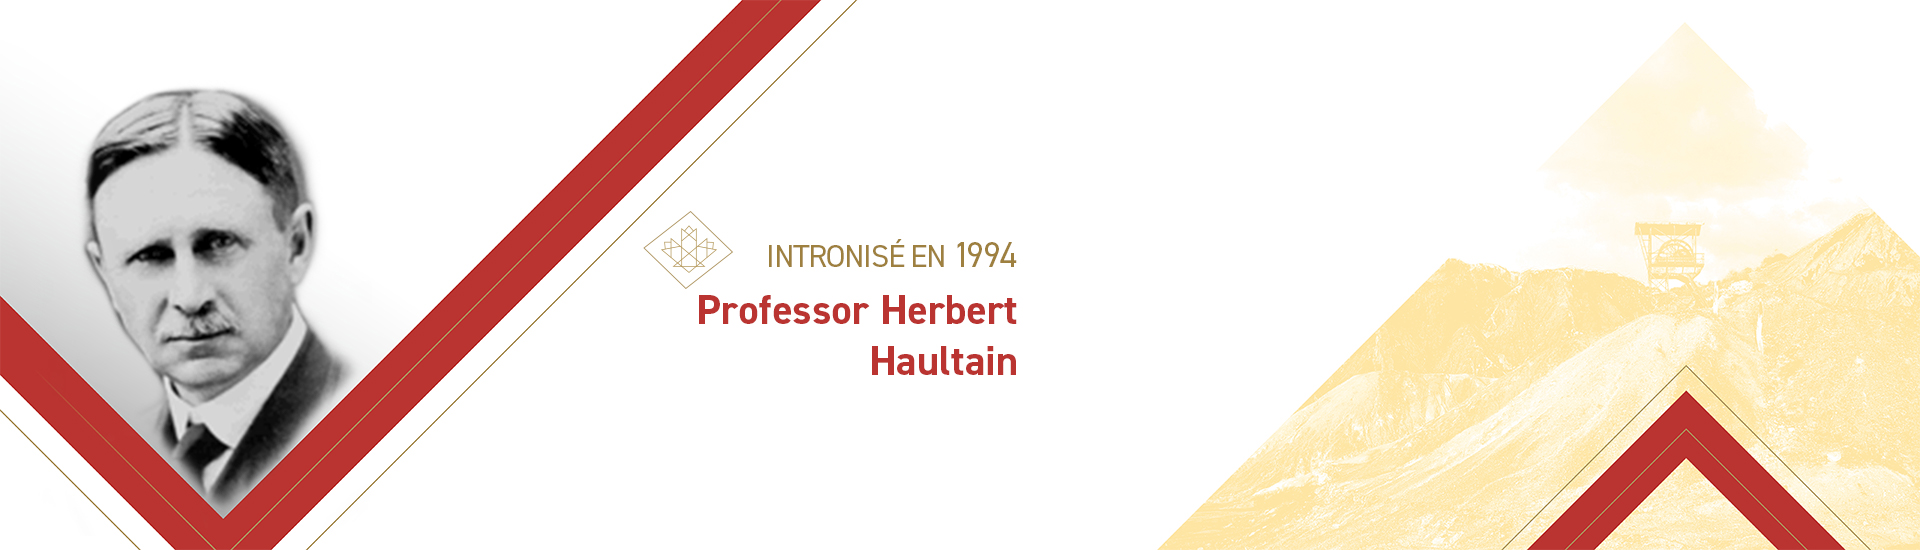 Professeur Herbert Haultain (1869-1962)